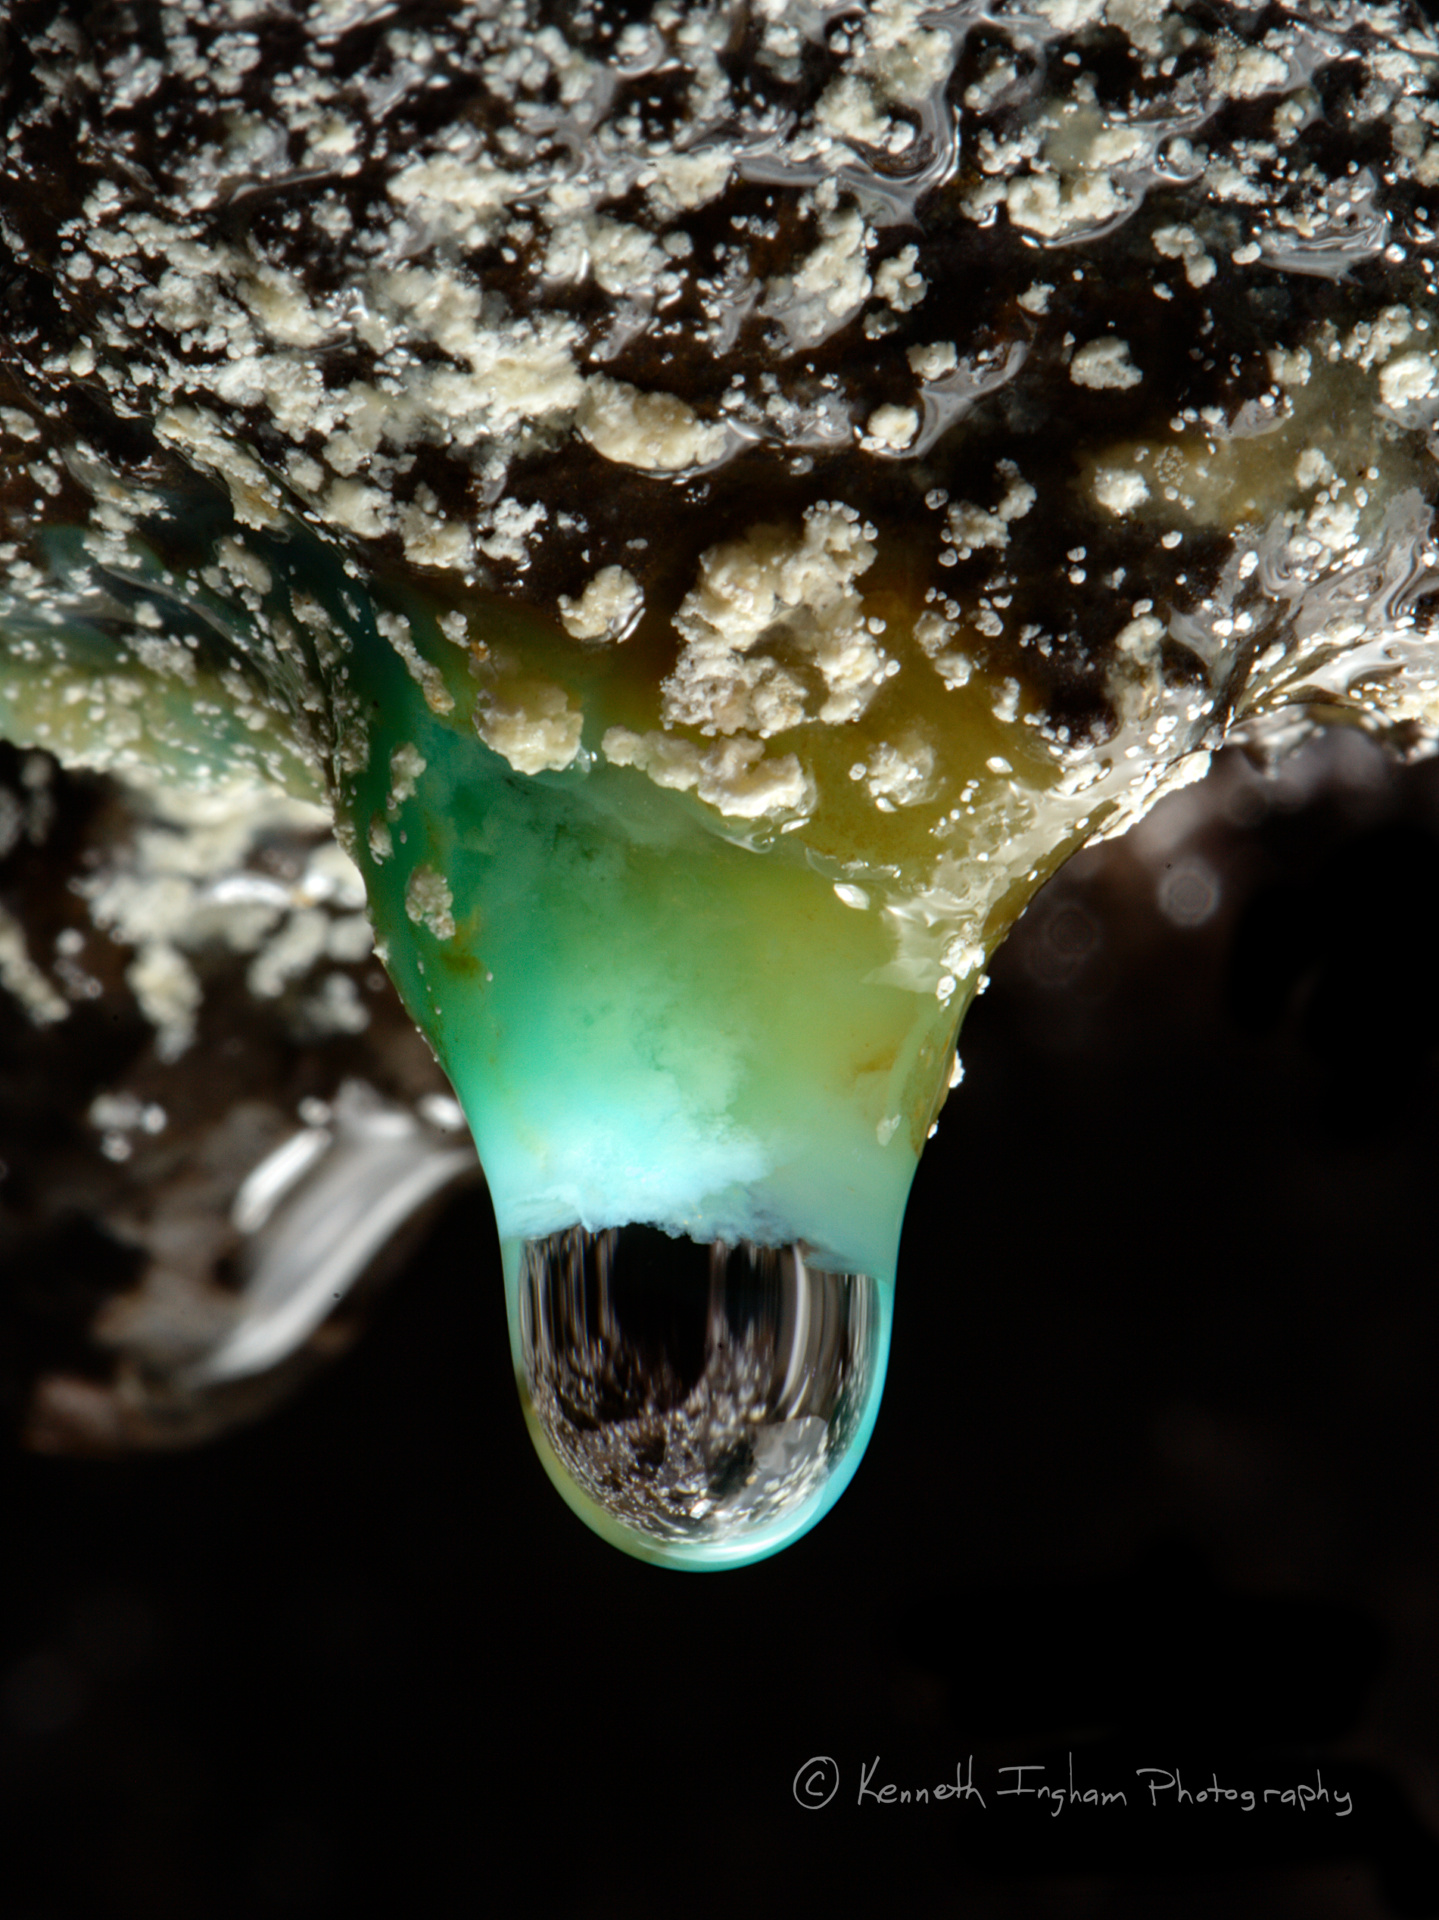 Weakly-crystalline chrysachola stalactite